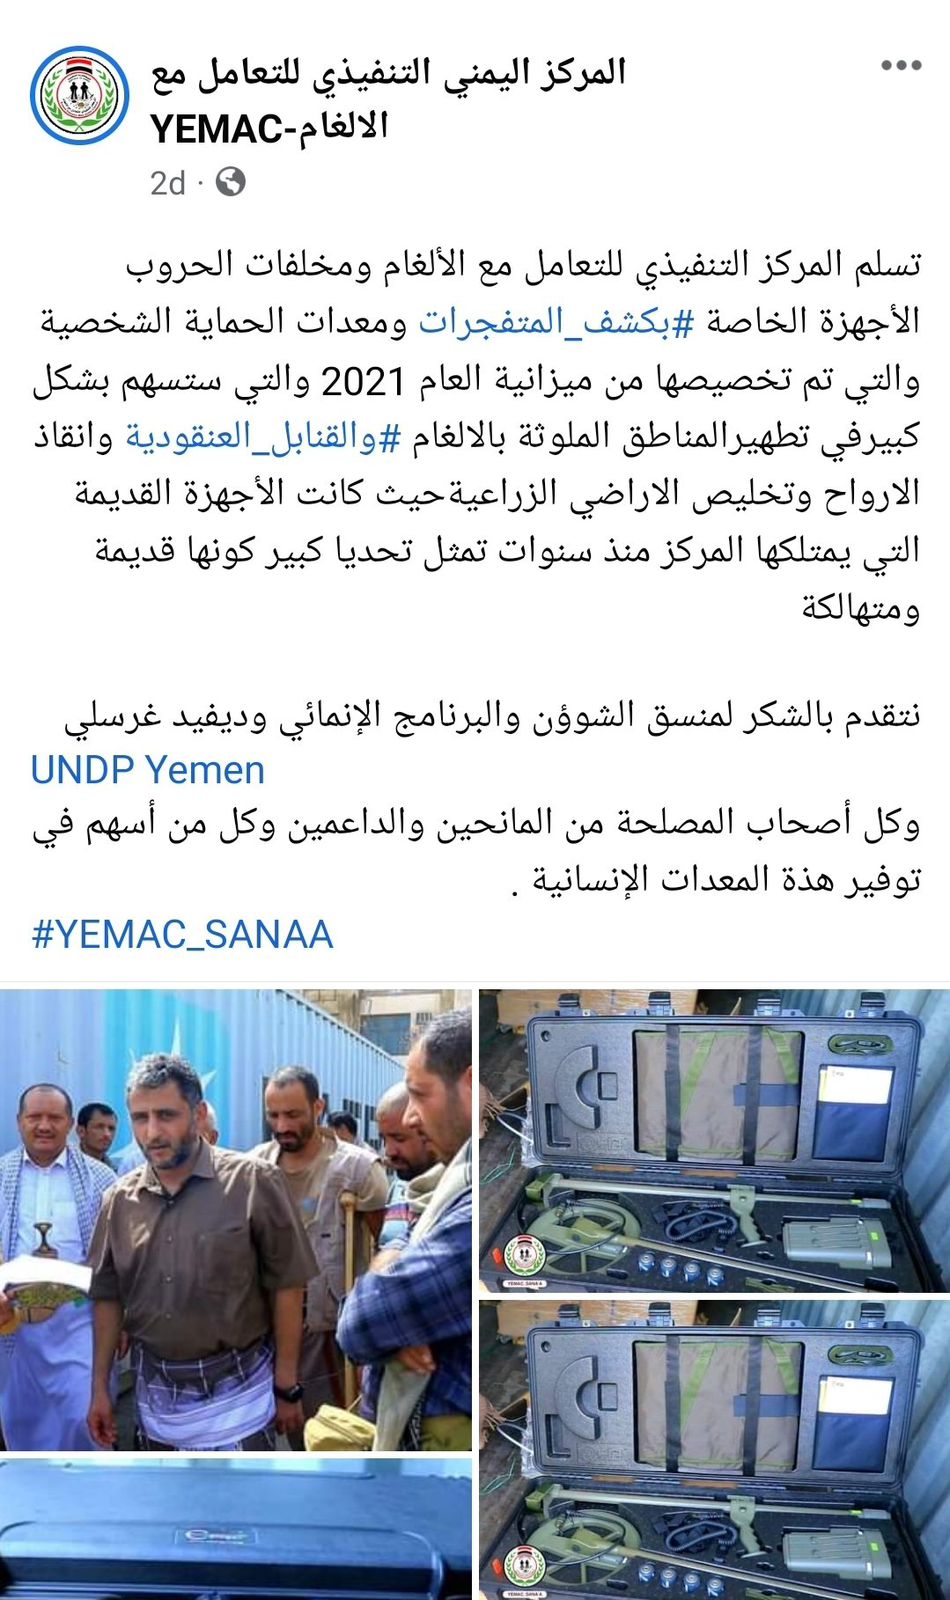 بينما البرنامج الإنمائي يتستر على الصفقة ..الحوثيون يحرجون الأمم المتحدة بعد تسلمهم أجهزة حديثة 